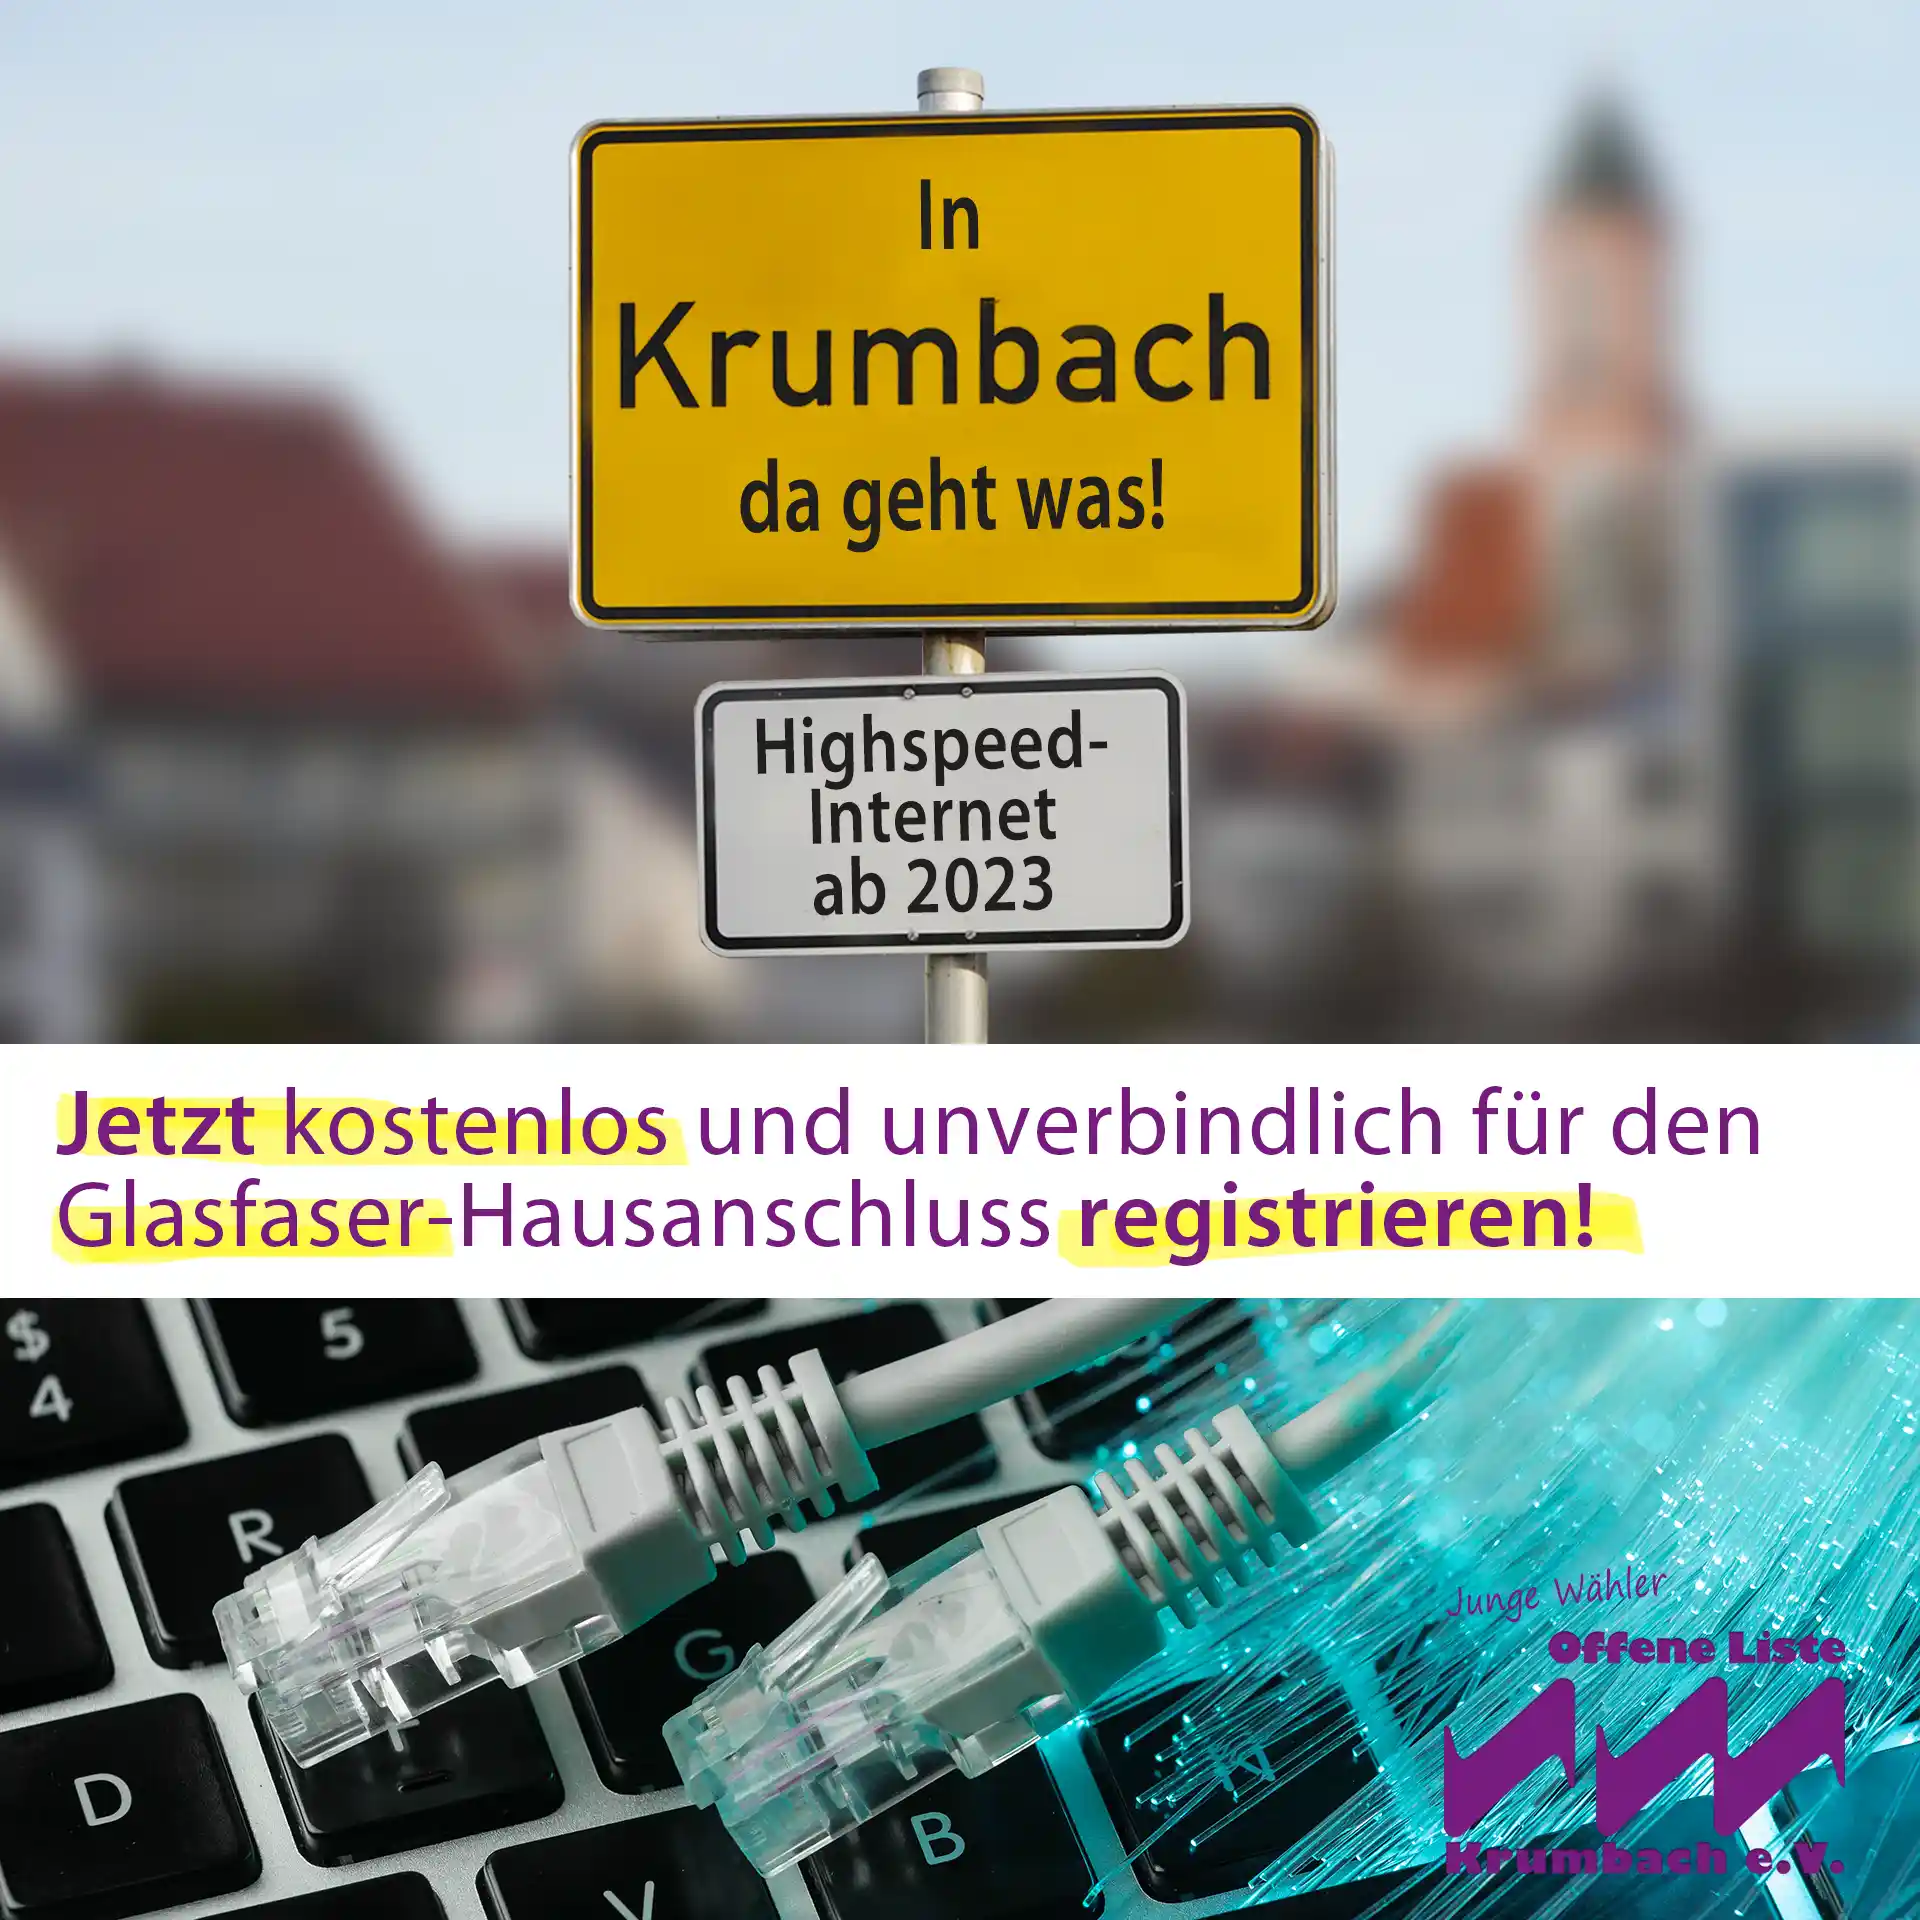 Schnelles Internet kommt endlich nach Krumbach: Telekom plant GLASFASERAUSBAU in 2023 und 2024